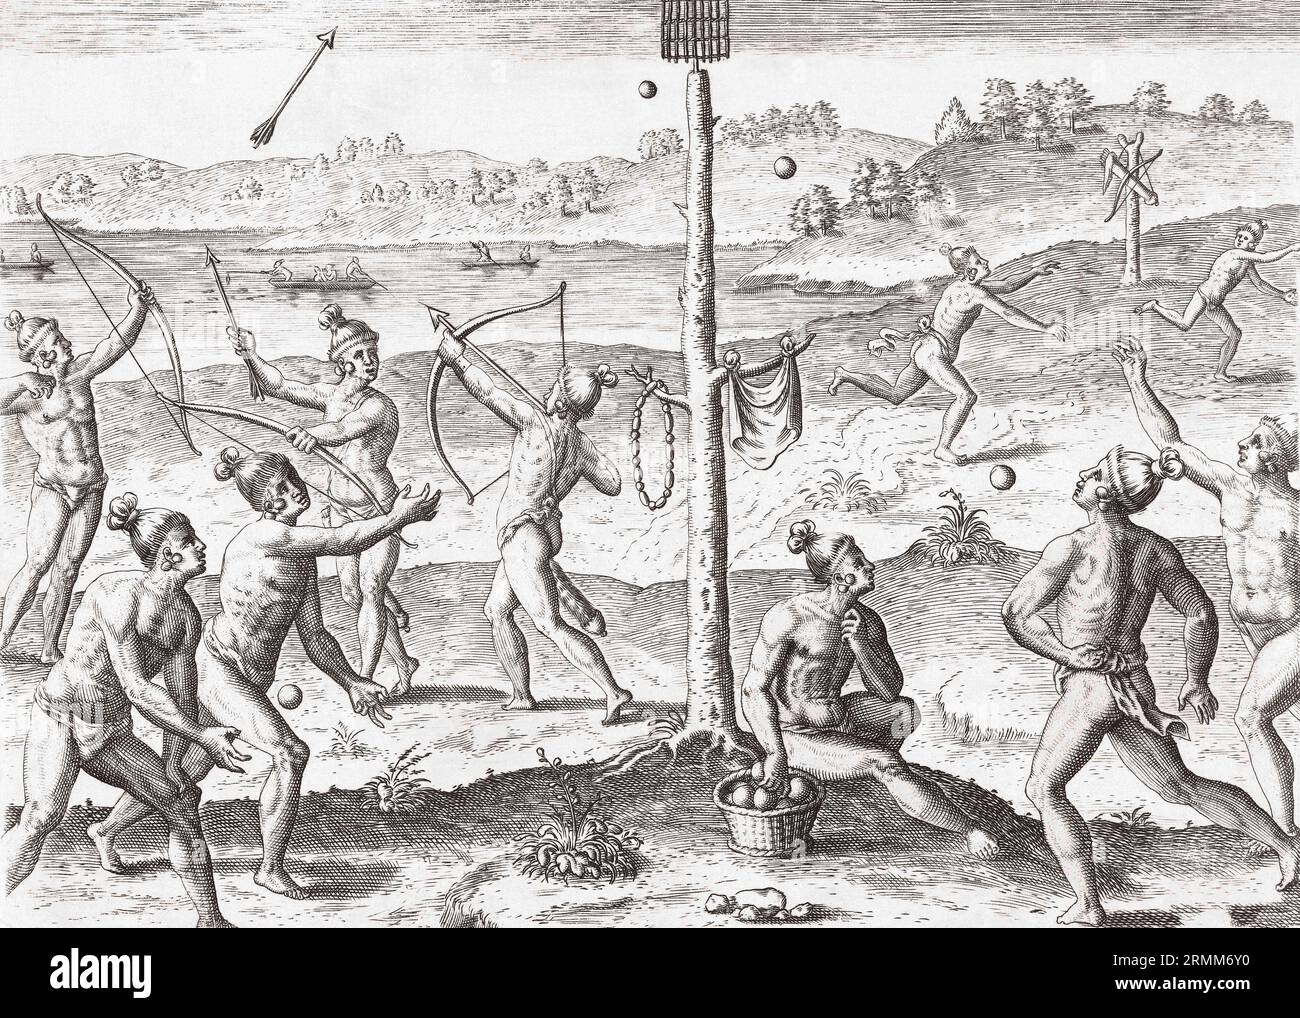 Jóvenes nativos americanos en juego, disparando arcos y flechas y lanzando bolas en una canasta. Después de una obra de finales del siglo XVI de Theodor de Bry. Foto de stock